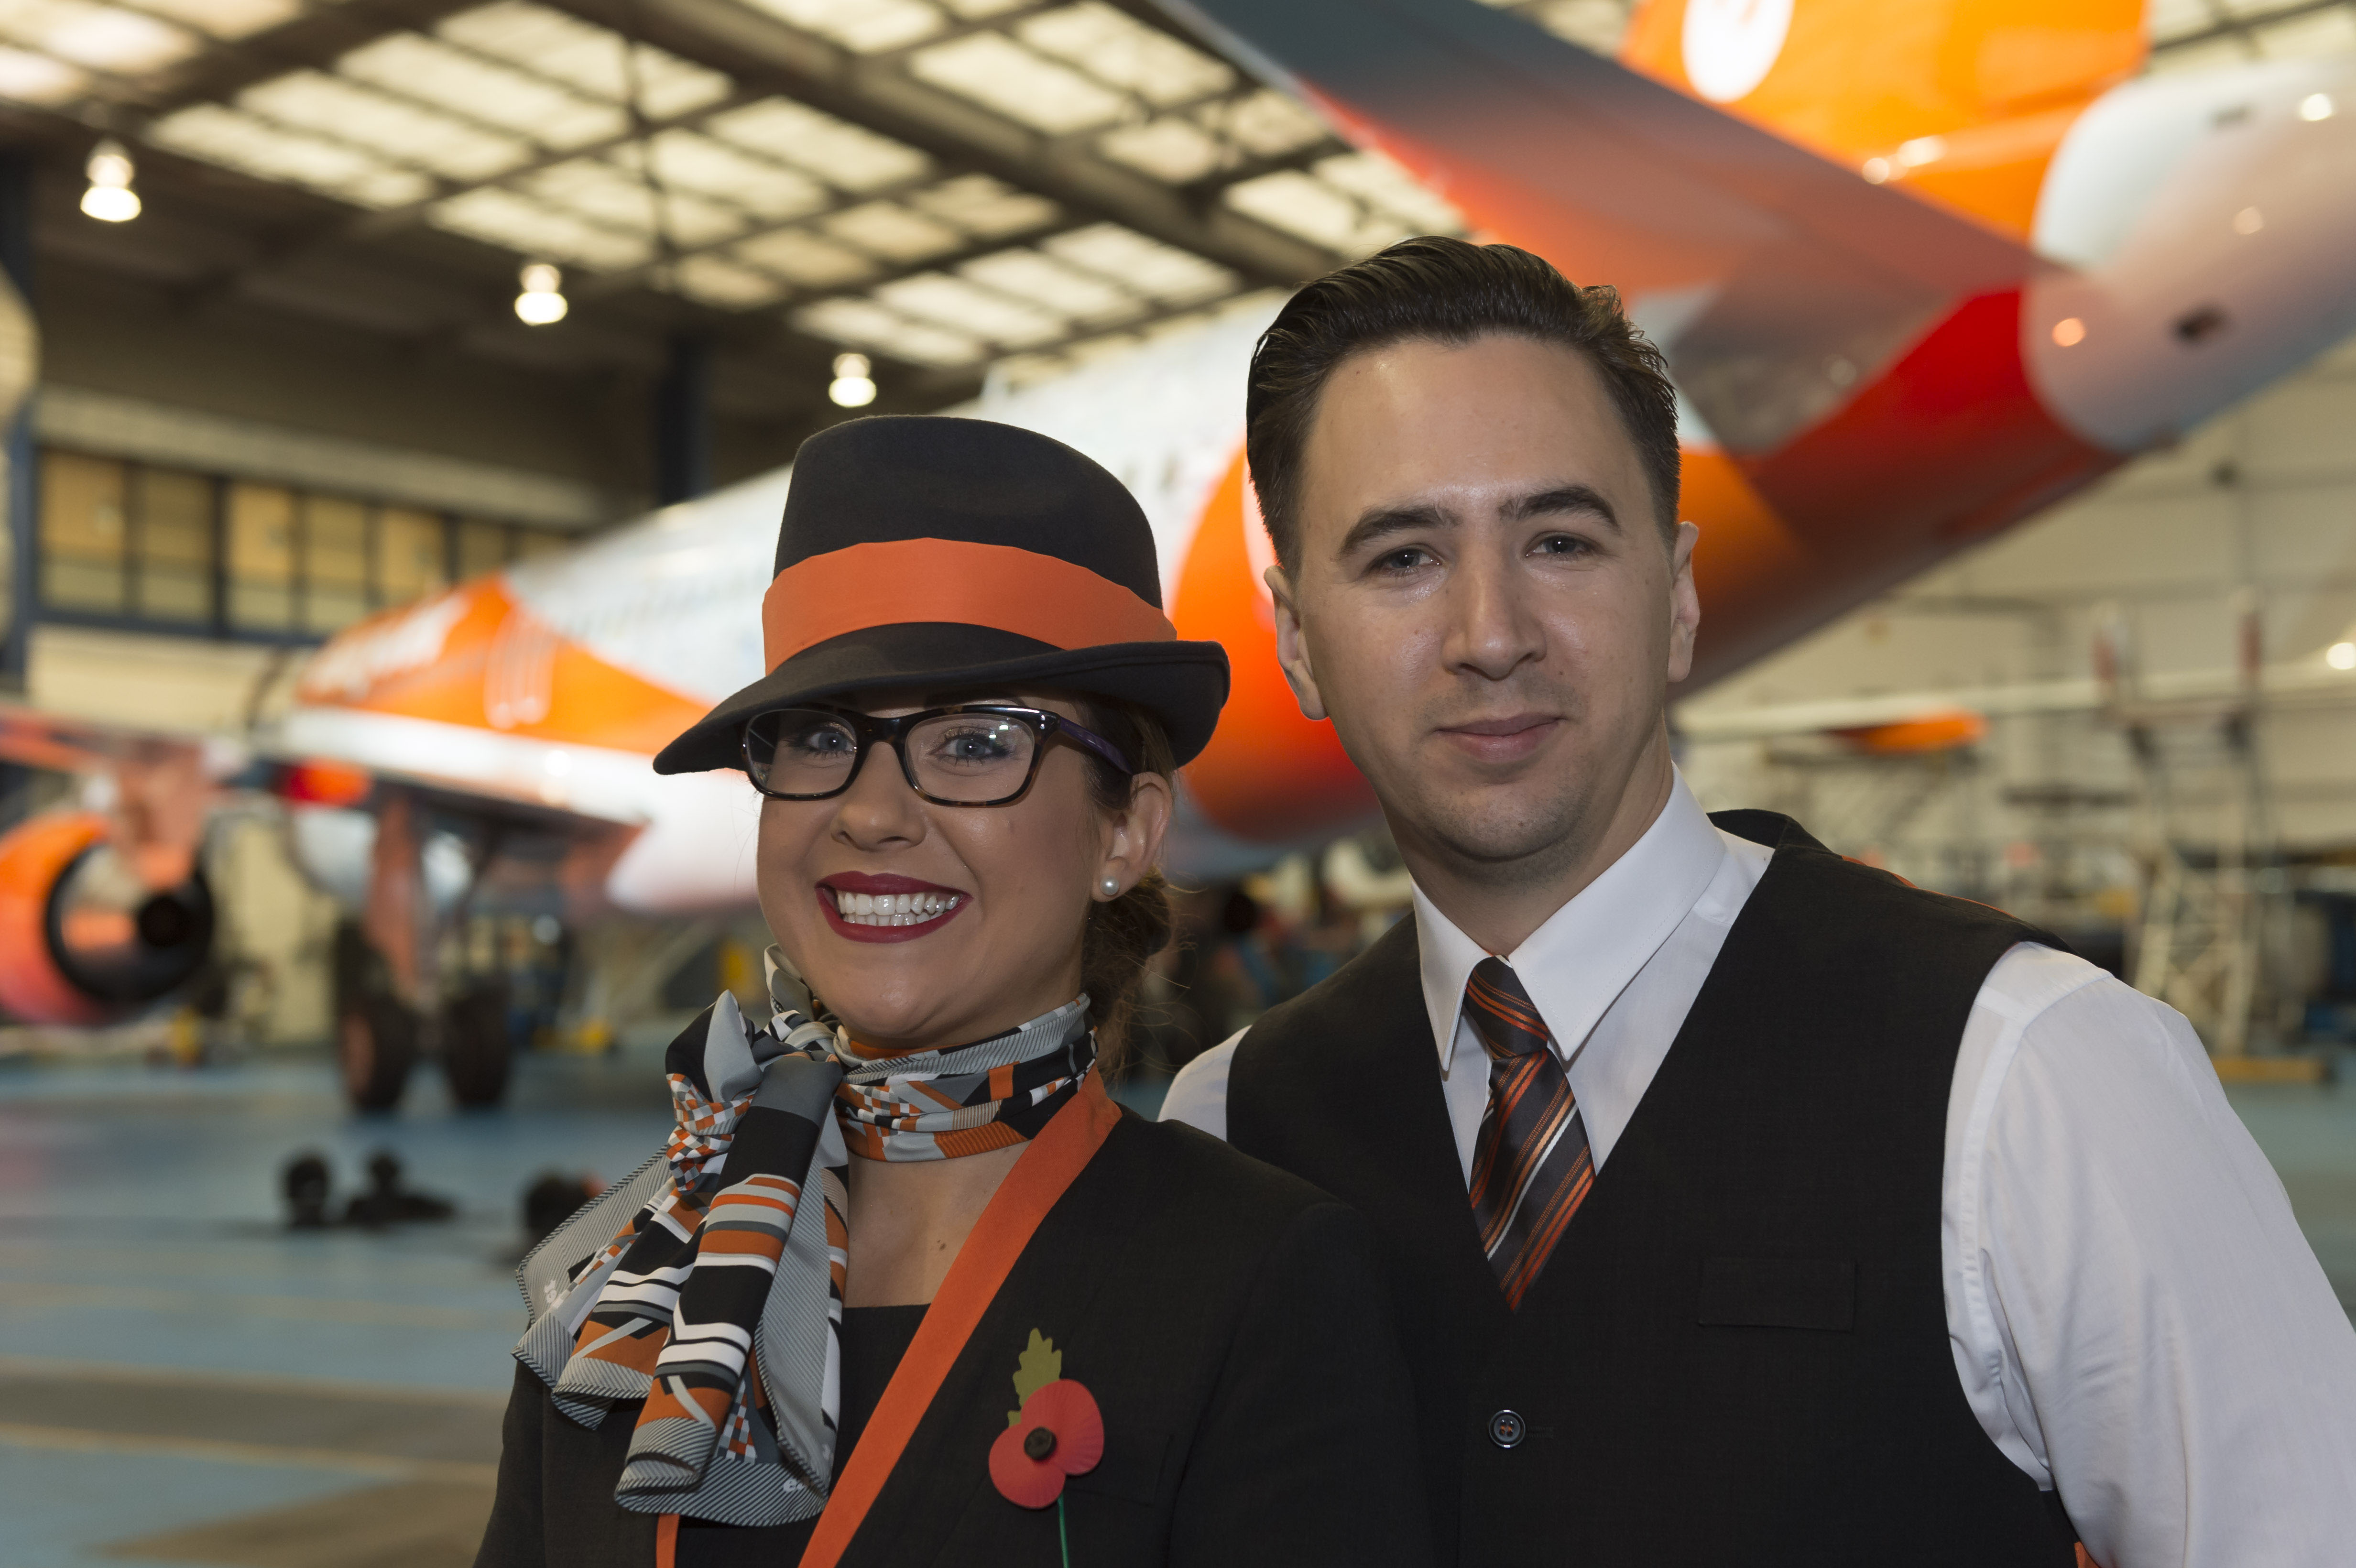 2015-11-10 12:19:17 LONDEN - De viering van het twintig jarig bestaan van luchtvaartmaatschappij easyJet in Hangar89 op Londen Luton. ANP LEX VAN LIESHOUT